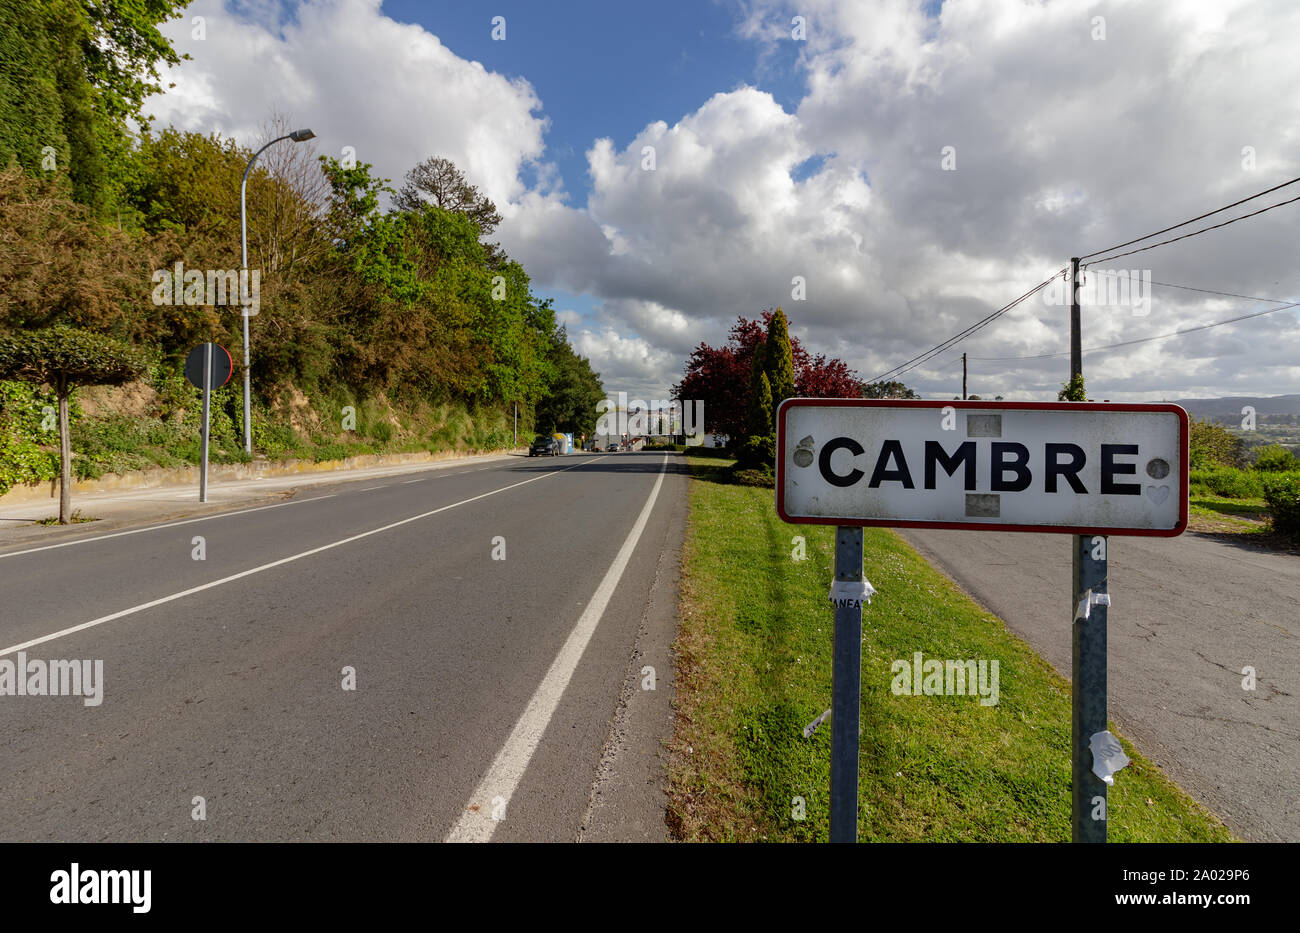 Cambre / Spain - April 15 2019: Cambre street sign in Cambre La Coruna Spain Stock Photo